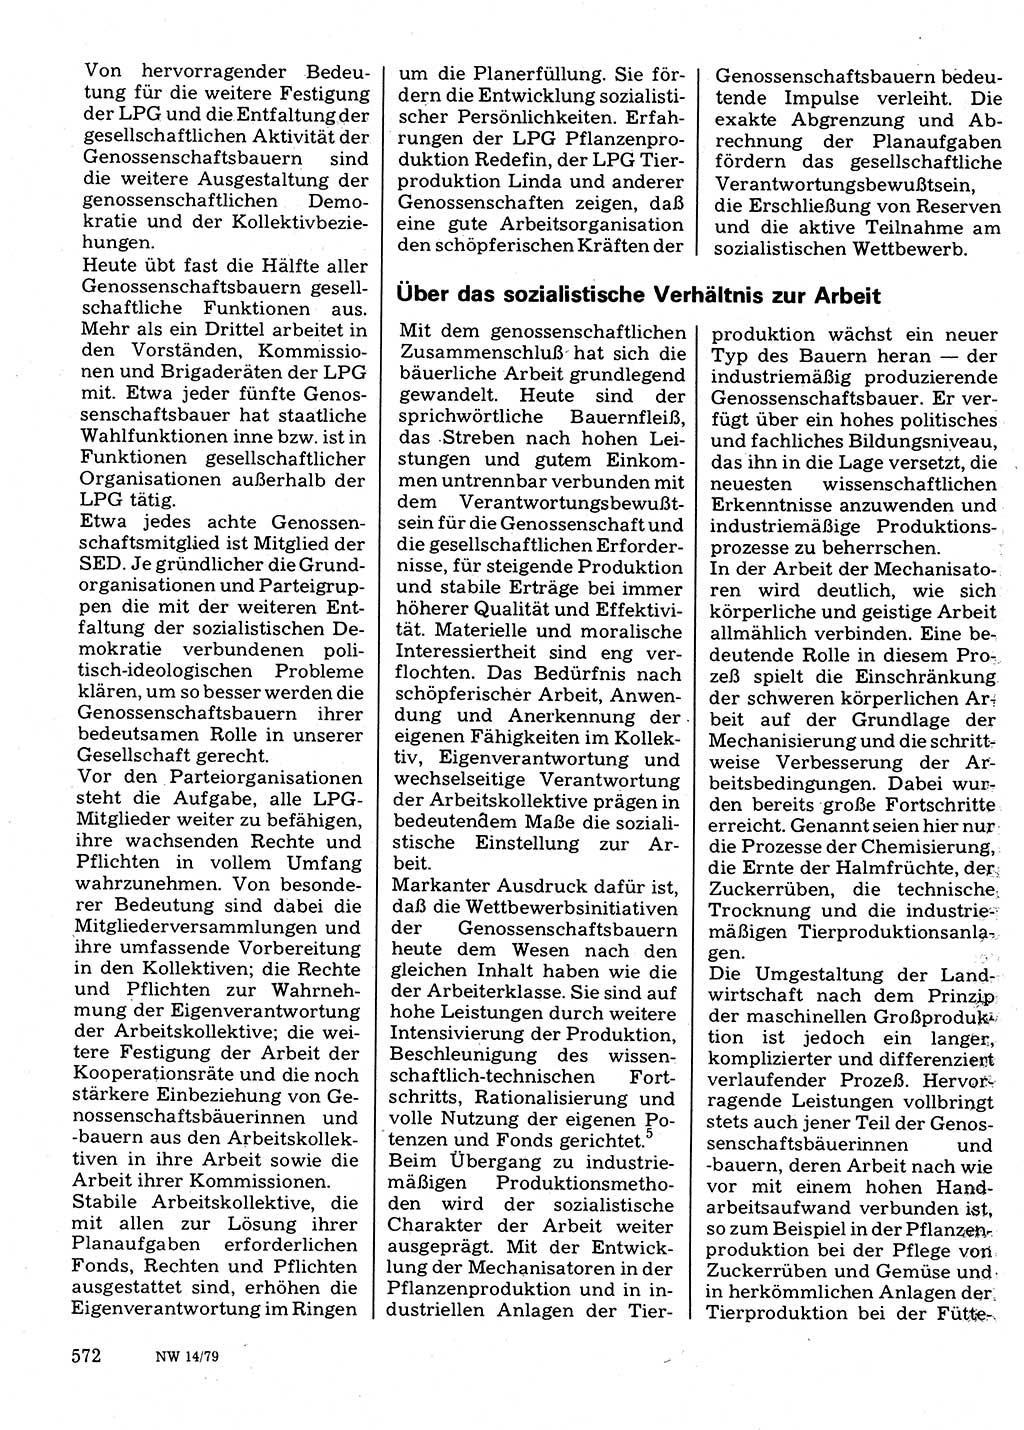 Neuer Weg (NW), Organ des Zentralkomitees (ZK) der SED (Sozialistische Einheitspartei Deutschlands) für Fragen des Parteilebens, 34. Jahrgang [Deutsche Demokratische Republik (DDR)] 1979, Seite 572 (NW ZK SED DDR 1979, S. 572)